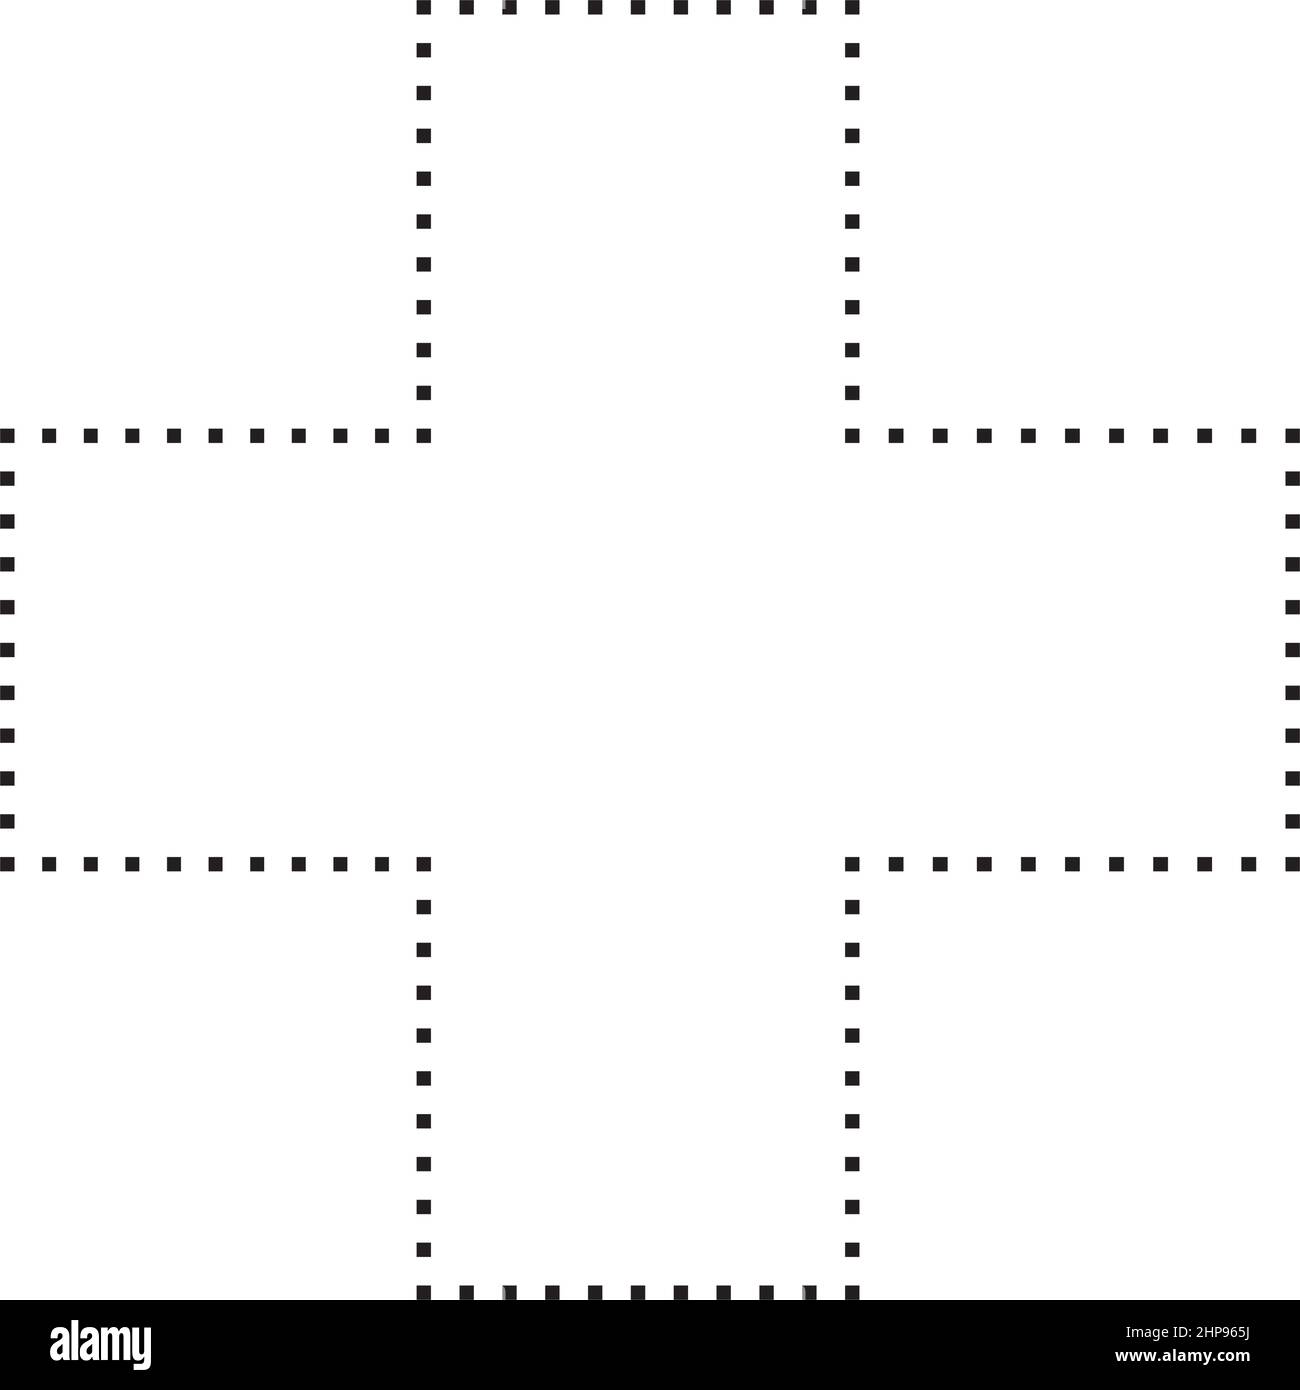 Icona vettoriale a forma di croce con simboli punteggiati per l'elemento  dell'interfaccia utente di un disegno grafico creativo in un'illustrazione  con pittogramma Immagine e Vettoriale - Alamy